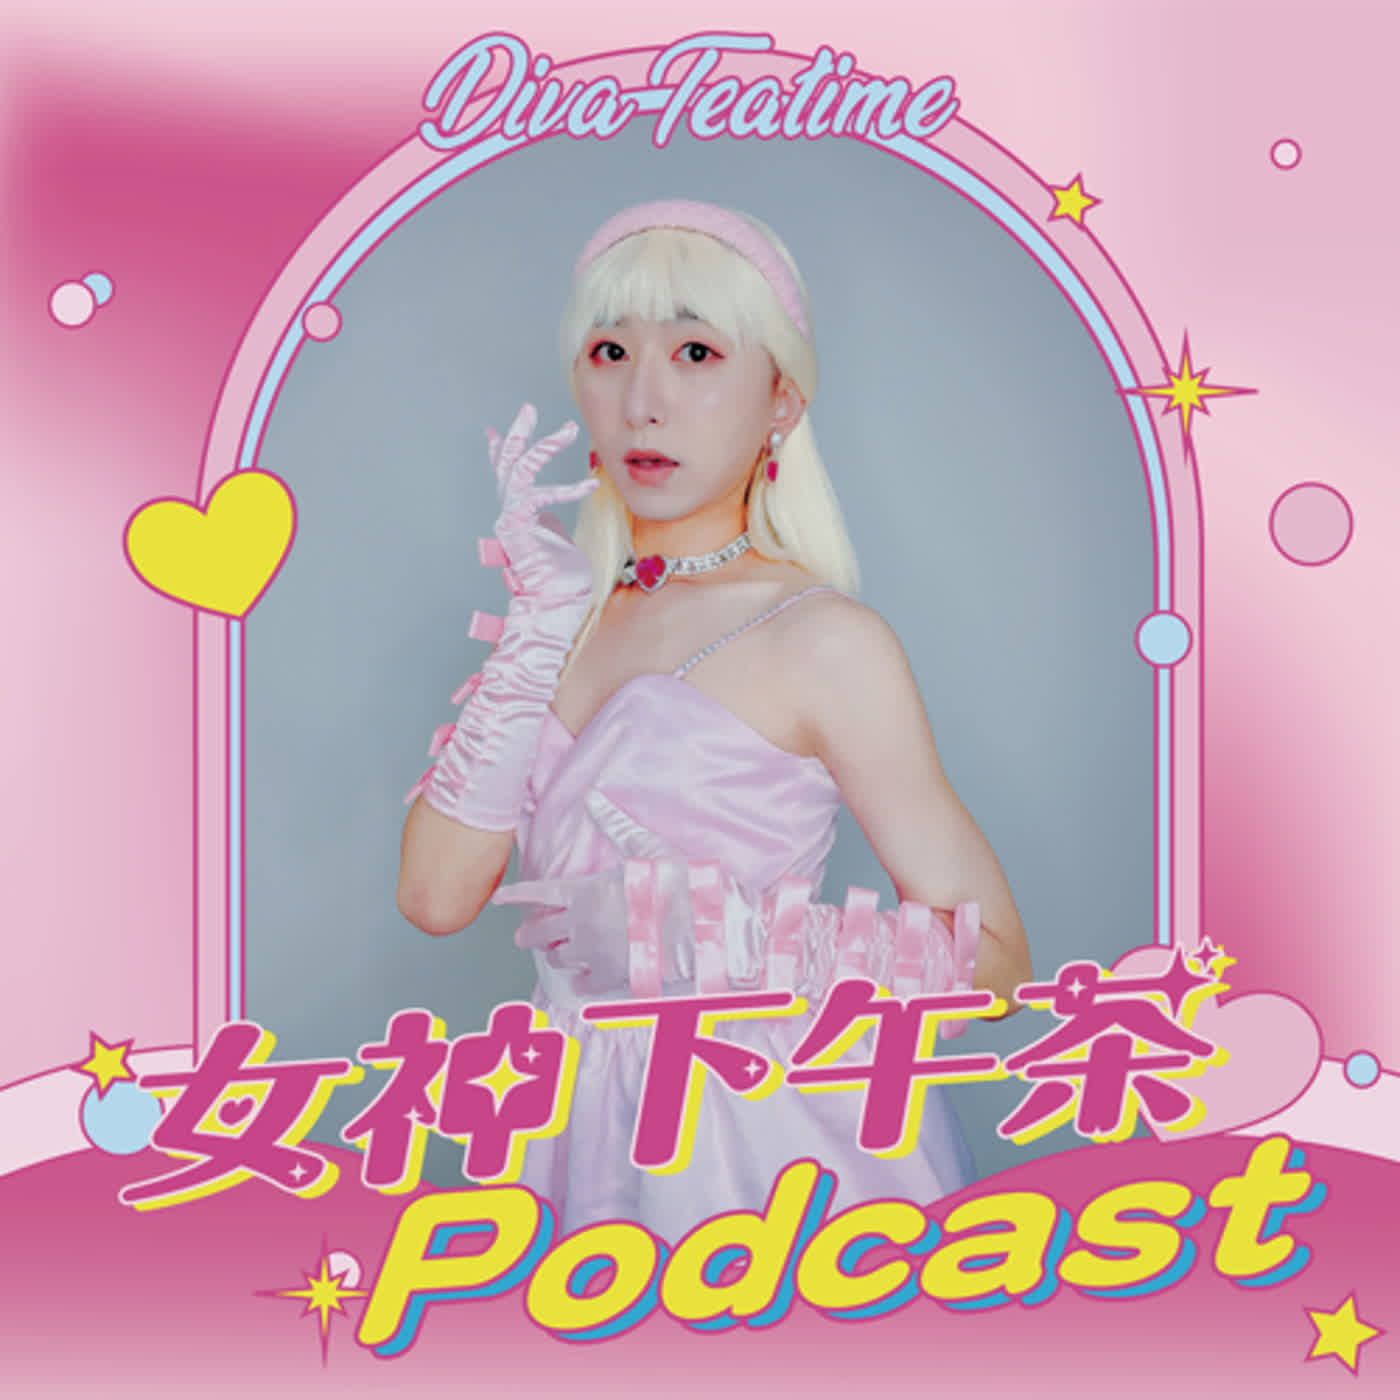 女神下午茶 Podcast